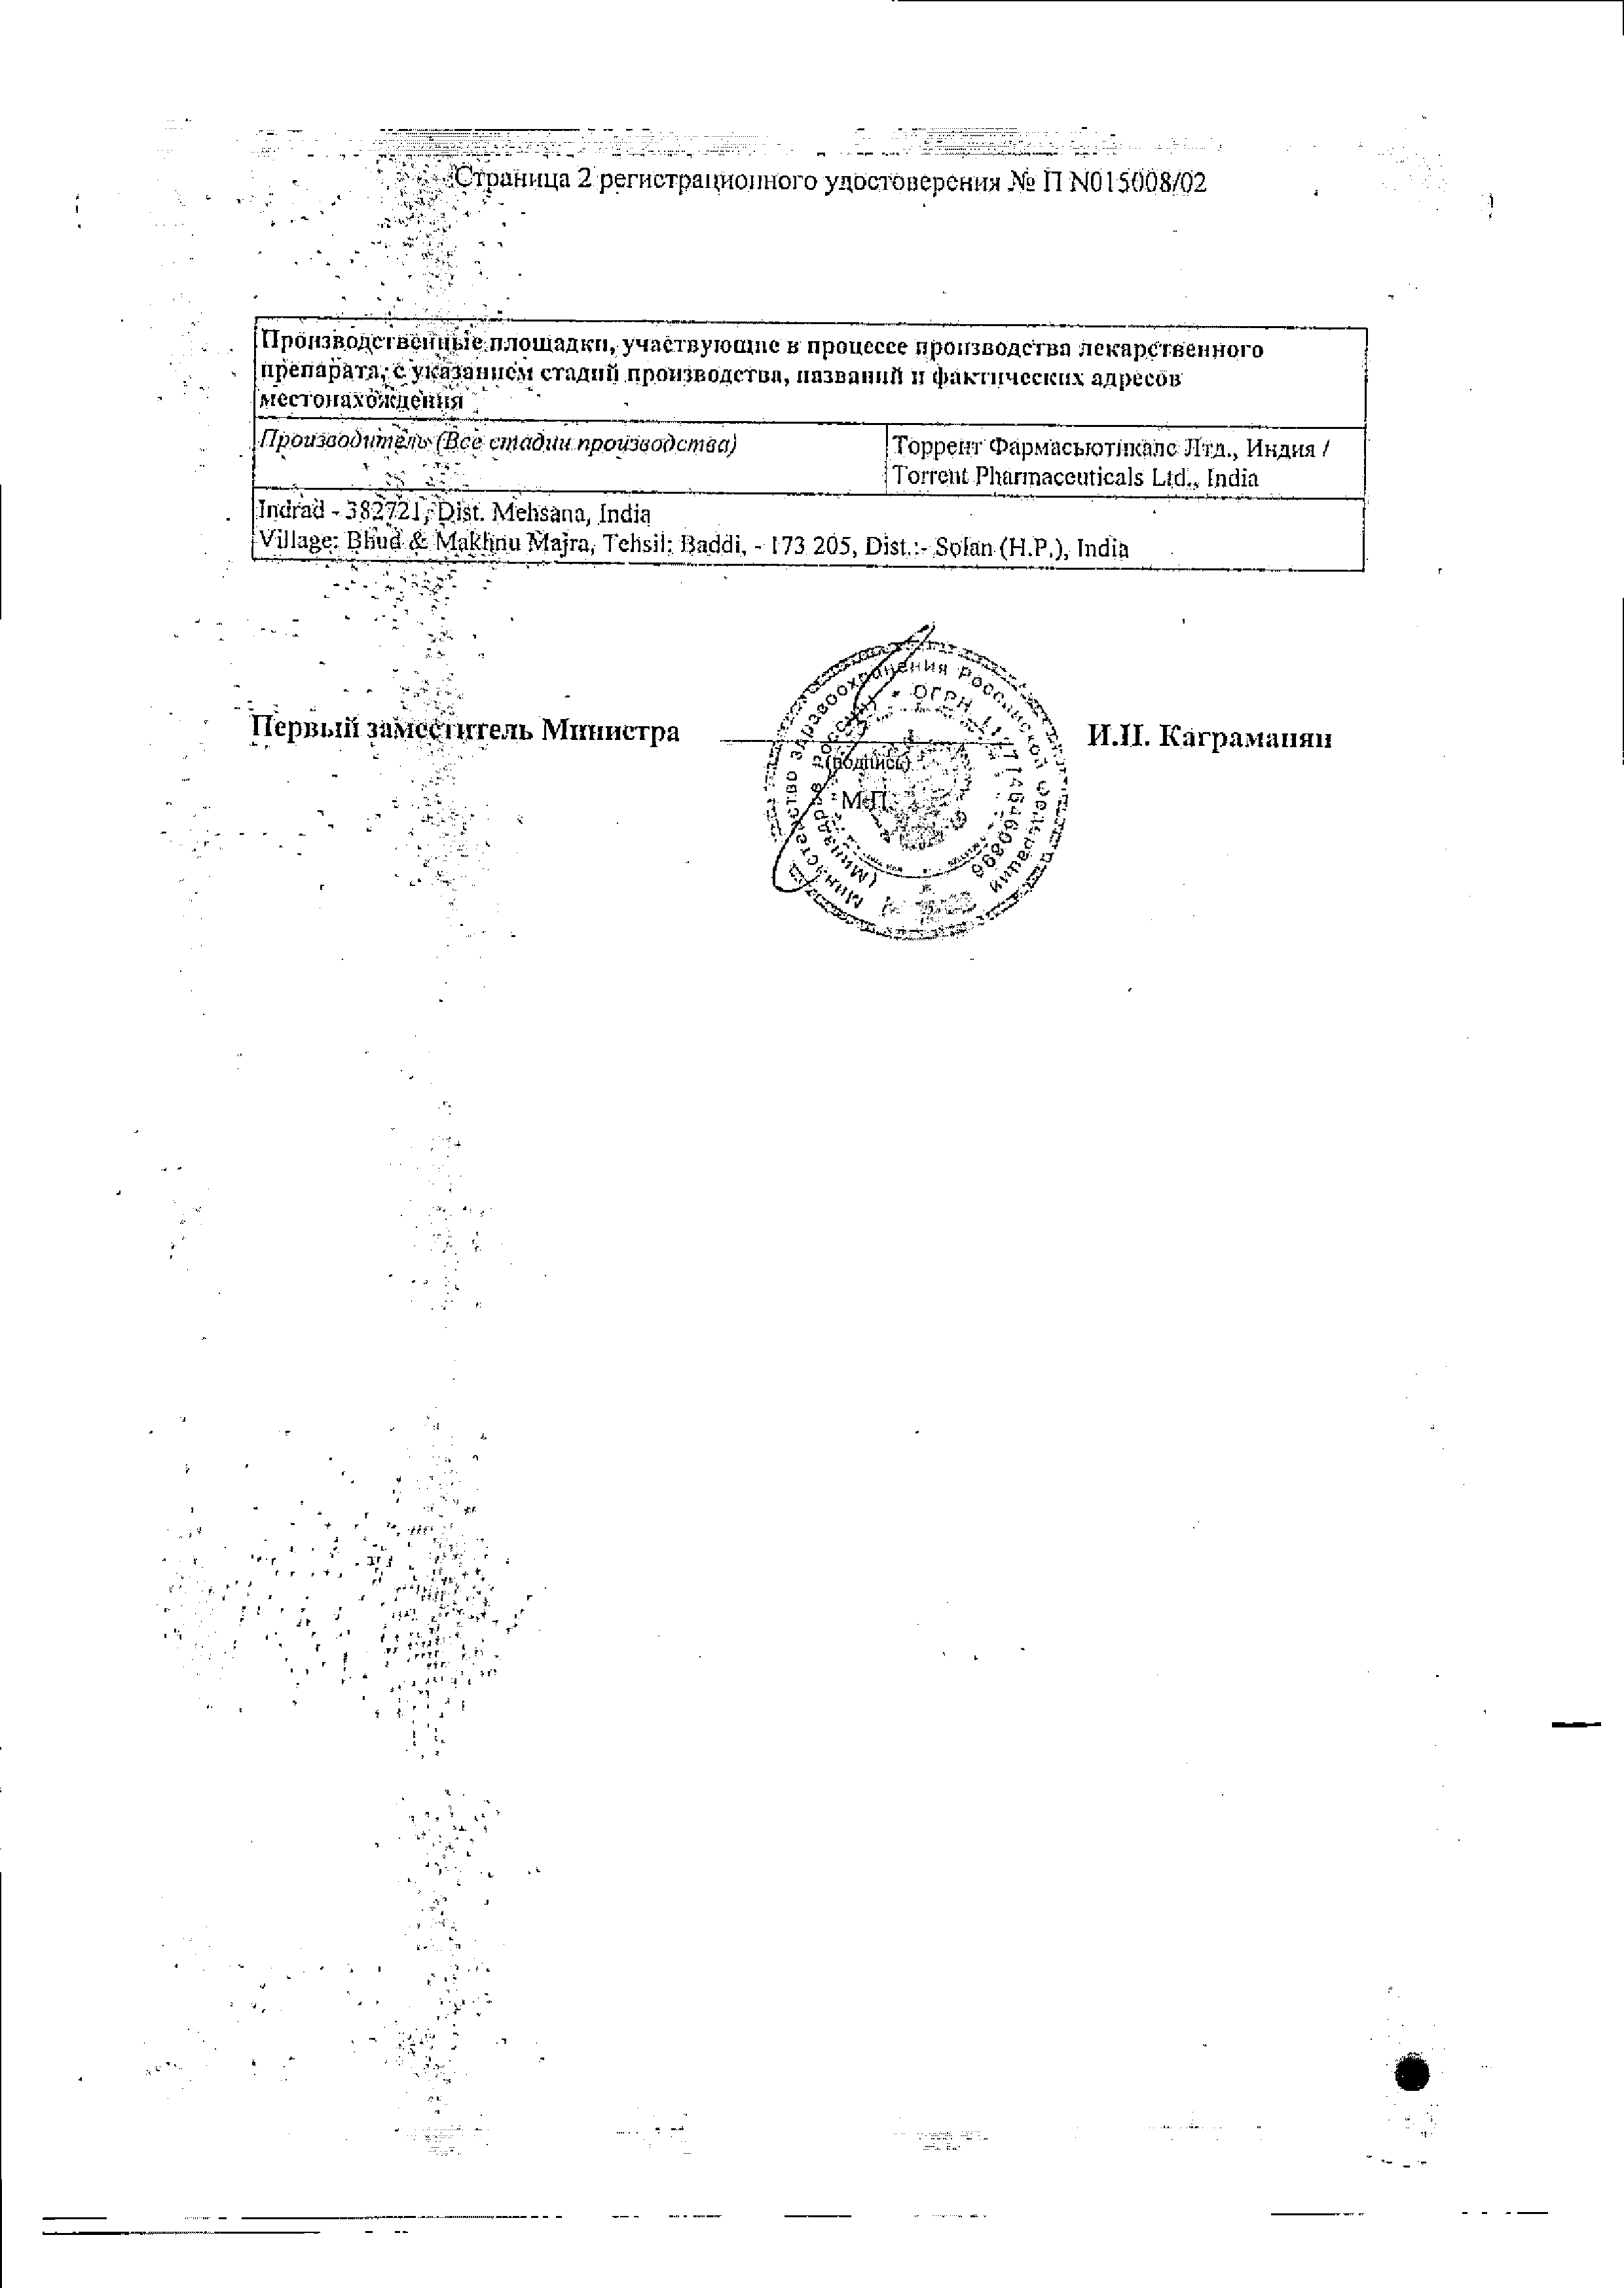 Спазмалин сертификат